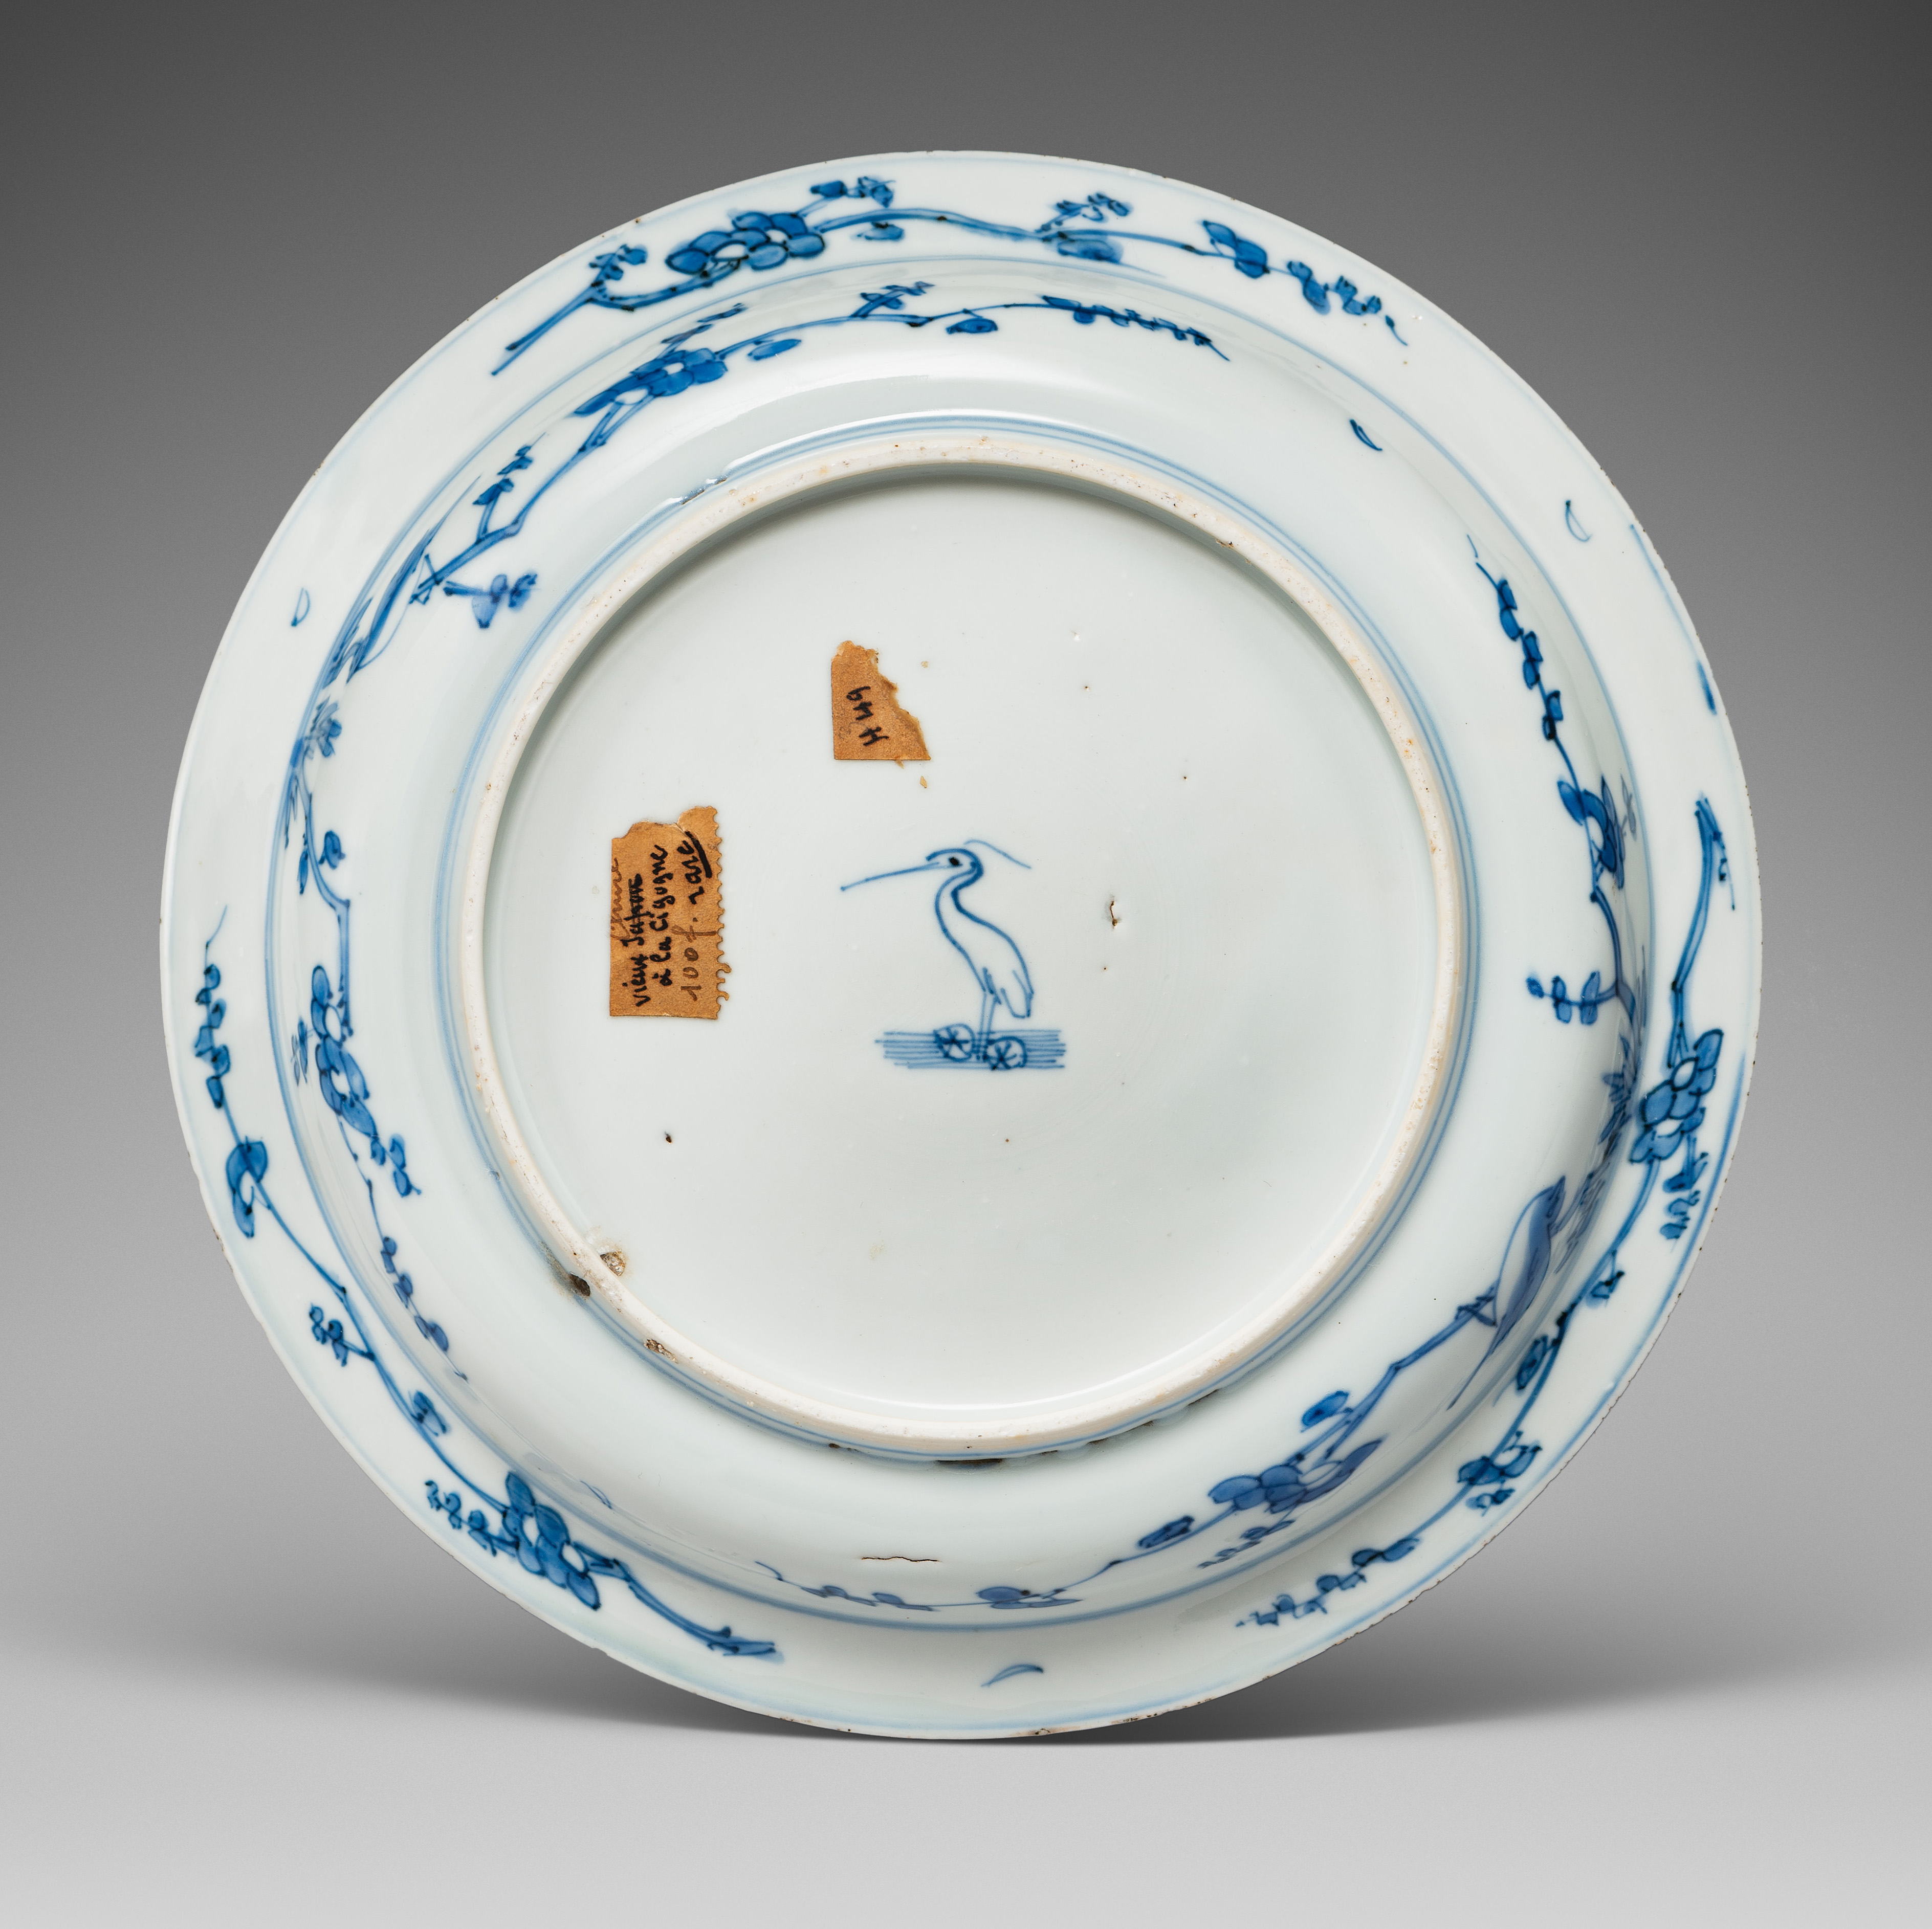 Porcelaine Dynastie Ming, reigne de Wanli (1573-1620), Chine